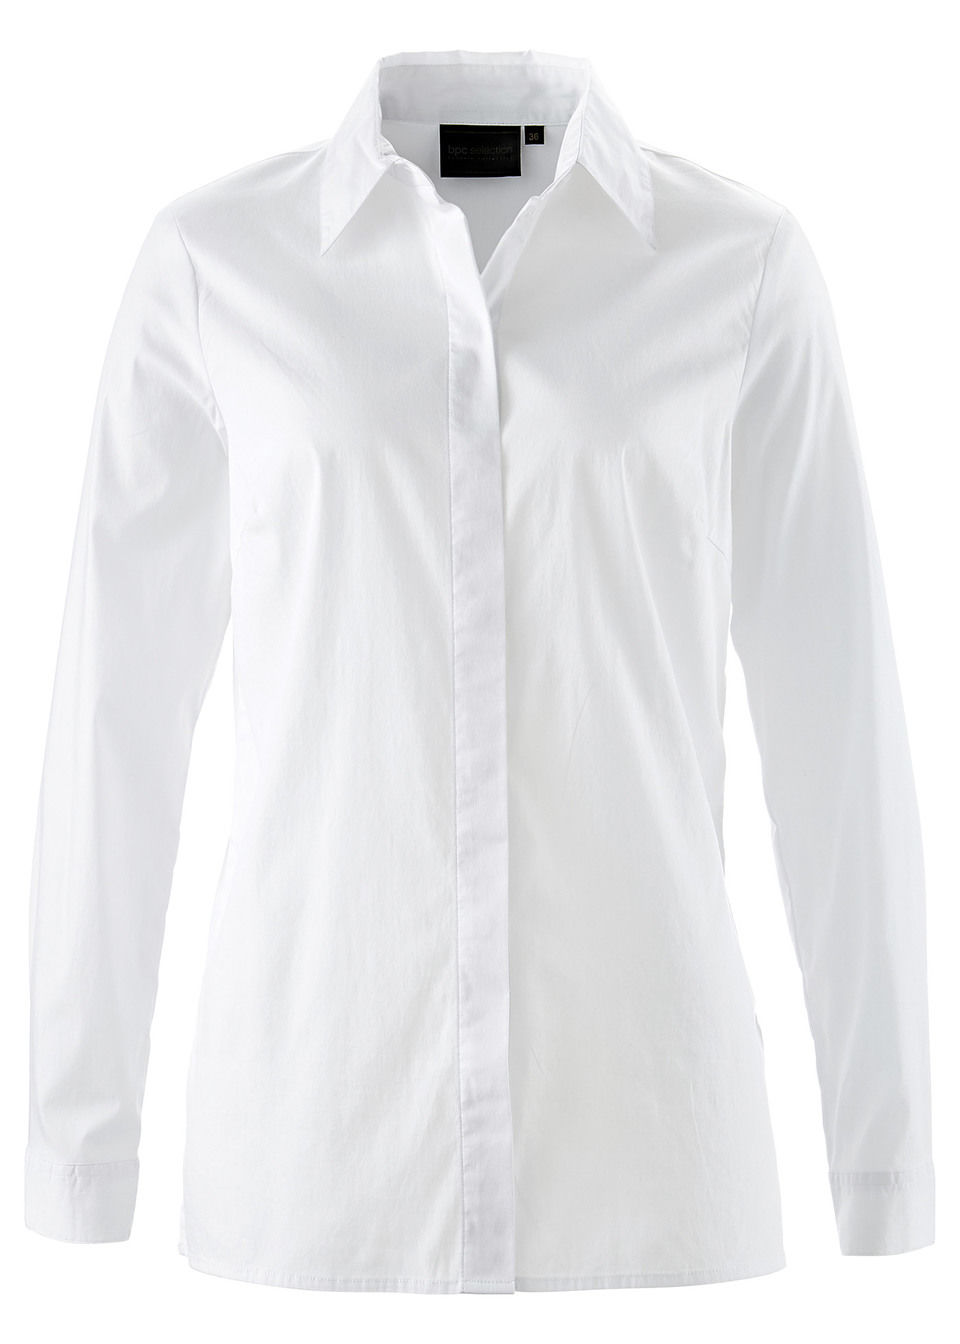 Рубашка удлиненная белая Бонприкс